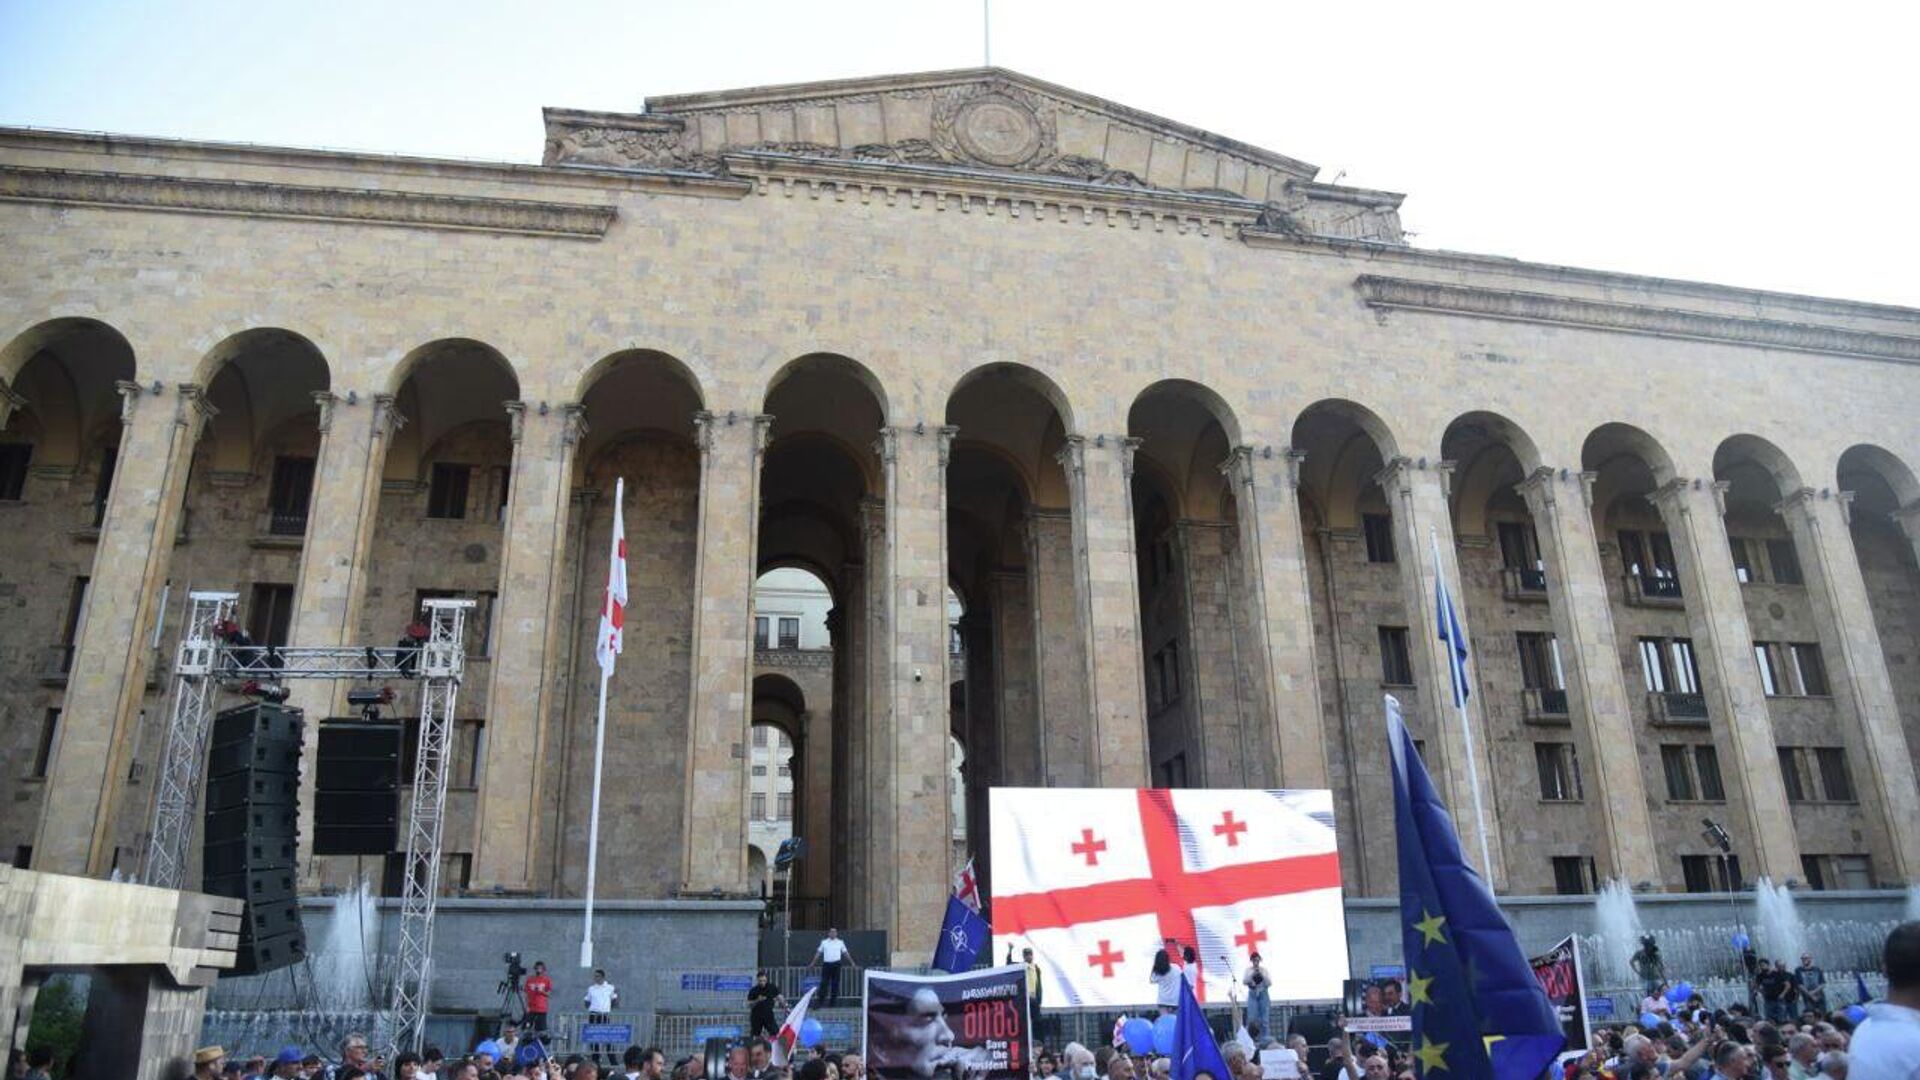 Акция протеста сторонников оппозиции у здания парламента Грузии 20 июня 2022 года - Sputnik Грузия, 1920, 30.06.2022